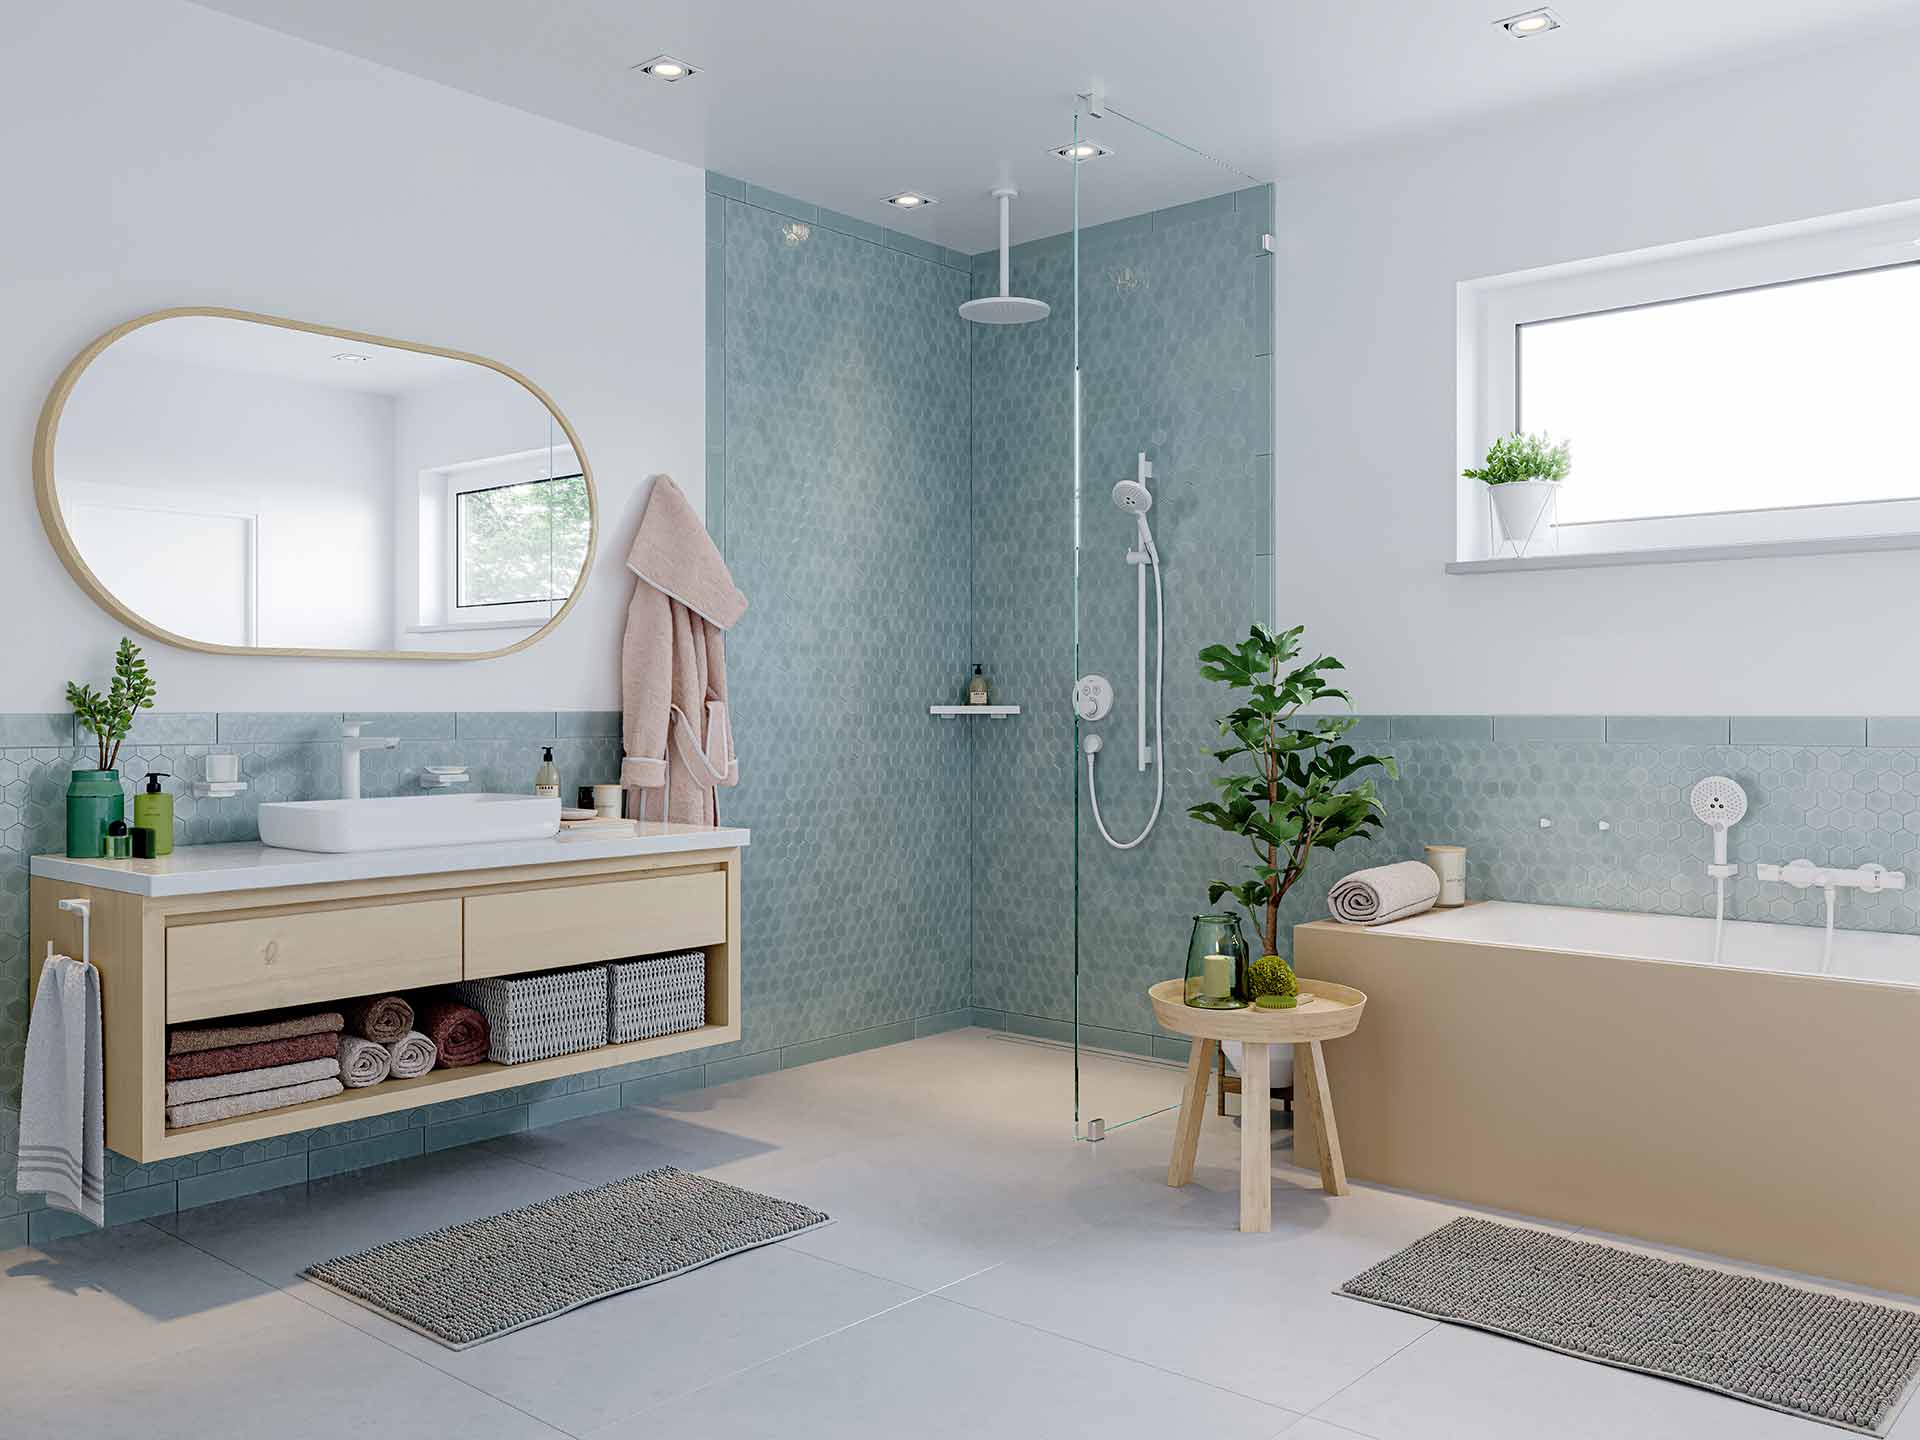 So planen Sie Ihr Bad mit gekonntem Einsatz von Formen, Farben und Licht